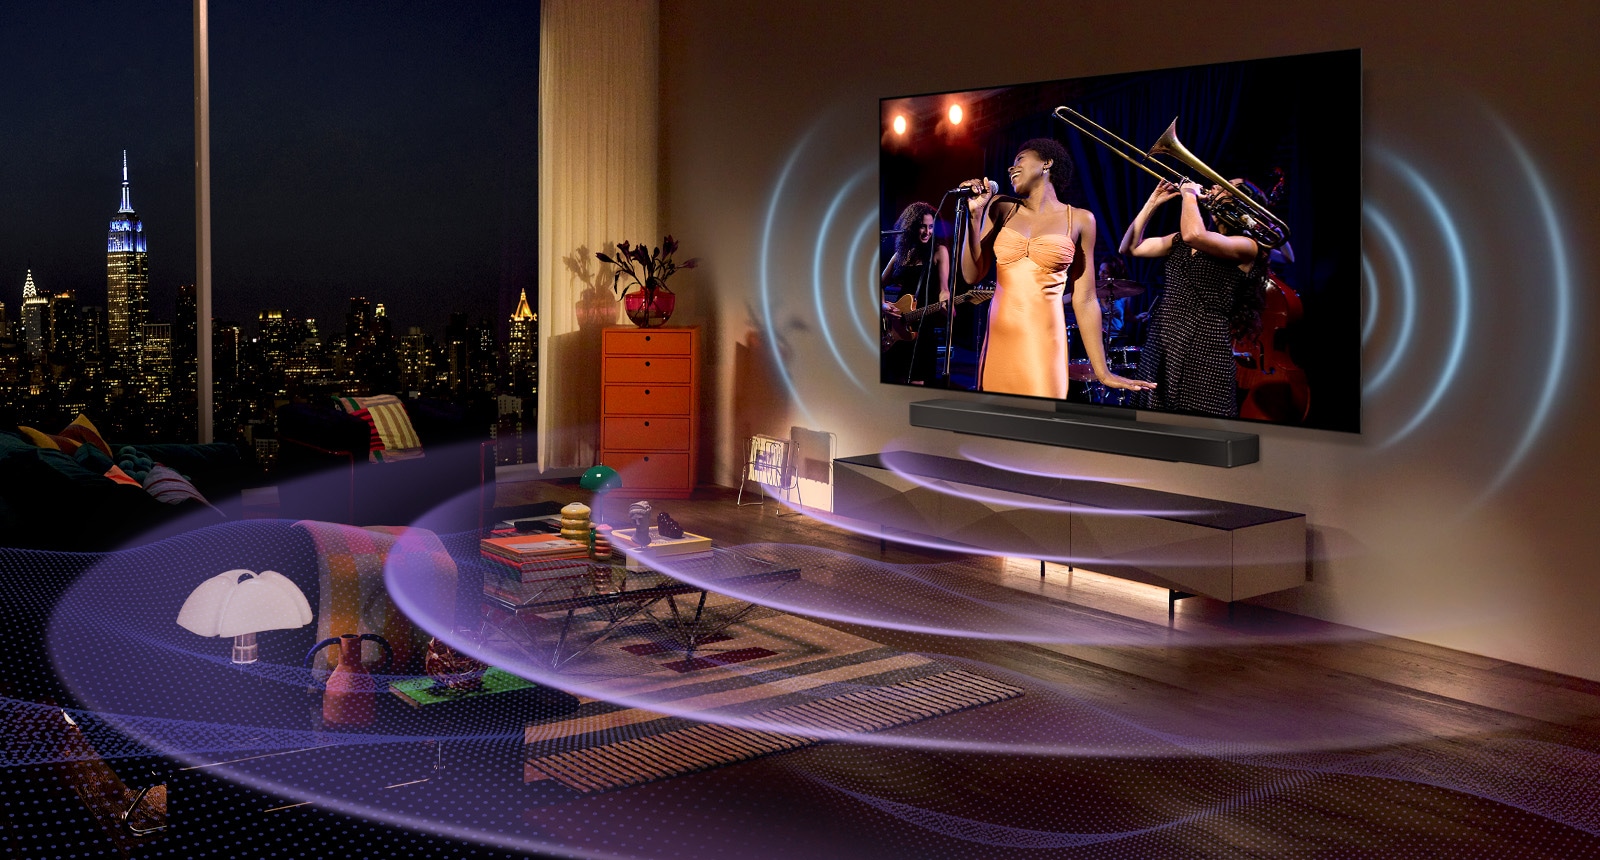 Η εικόνα μιας τηλεόρασης LG OLED σε ένα δωμάτιο όπου προβάλλεται μια συναυλία. Τον χώρο γεμίζουν μπλε καμπύλες γραμμές που απεικονίζουν τον ήχο της τηλεόρασης και μωβ καμπύλες γραμμές που εκφράζουν τον ήχο του Soundbar.